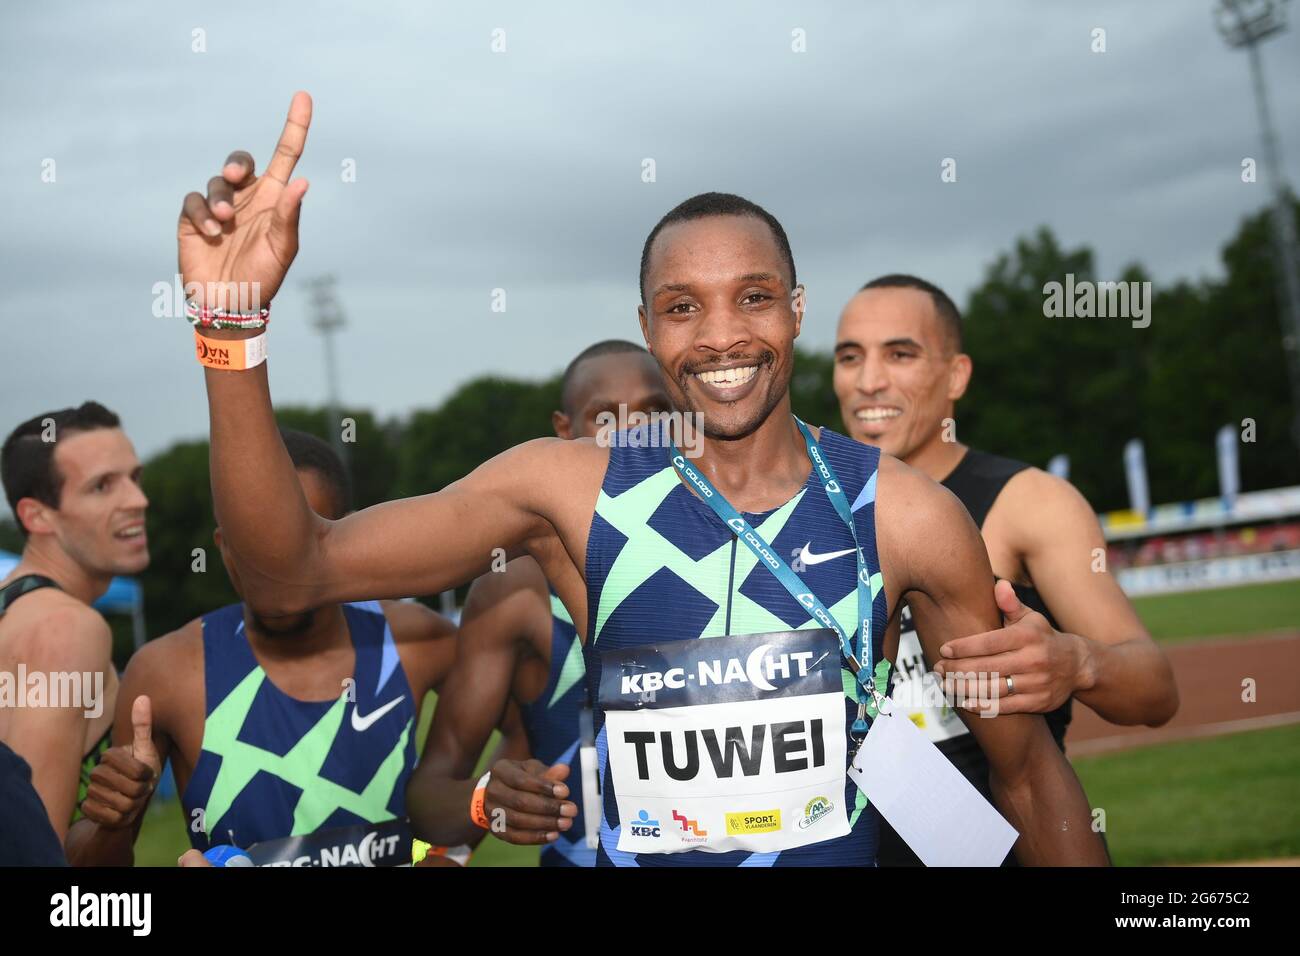 Kenya's Cornelious Tuwei celebrates after winning the men's 800m race at the 'KBC Nacht van de Atletiek' athletics meeting in Heusden-Zolder, Saturday Stock Photo